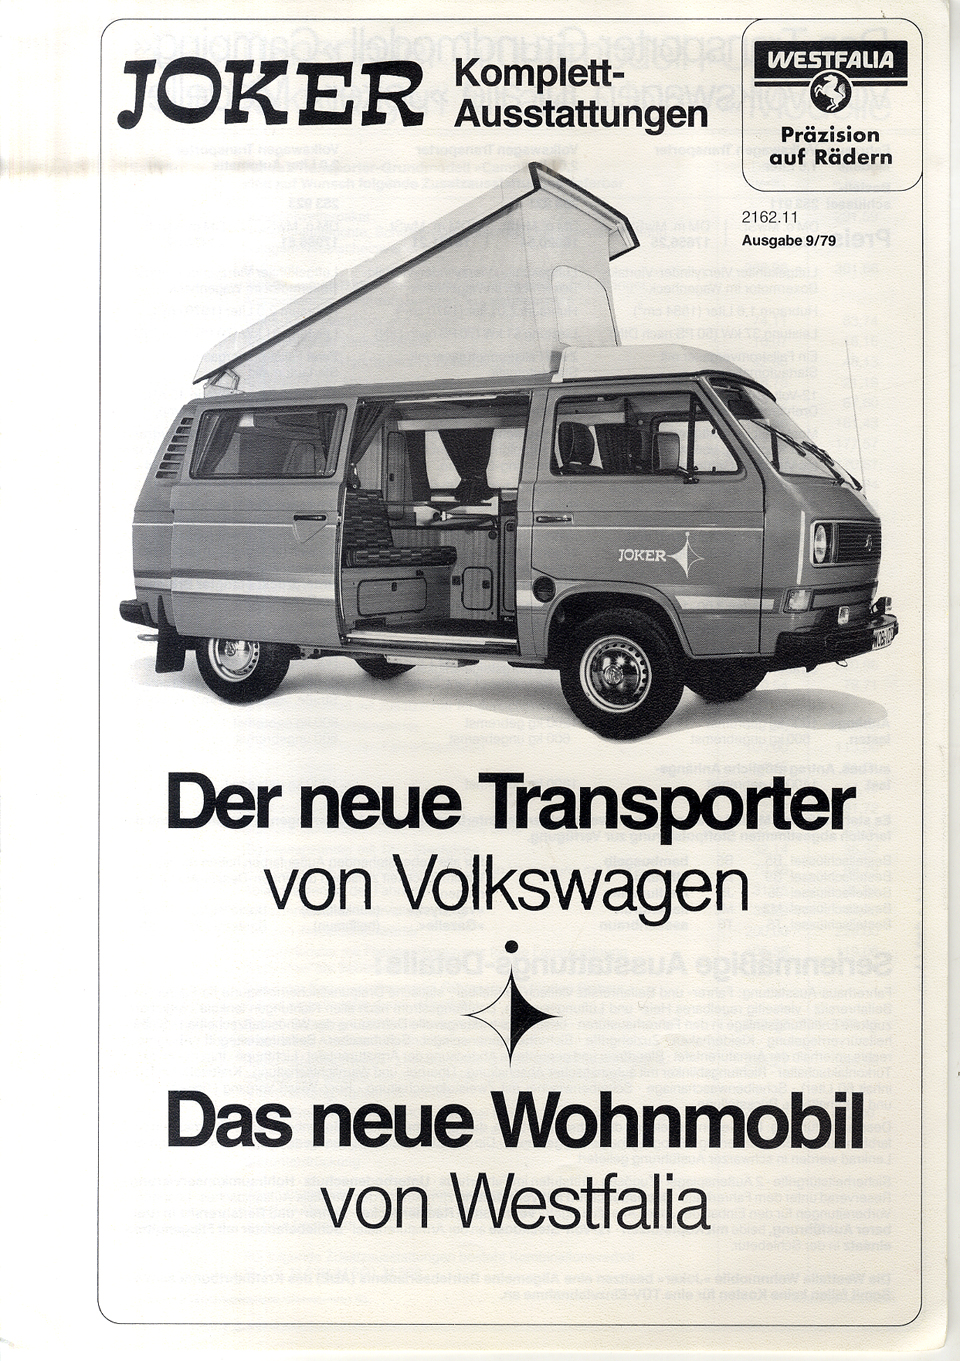 Der neue Transporter von Volkswagen - Das neue Wohnmobil von Westfalia